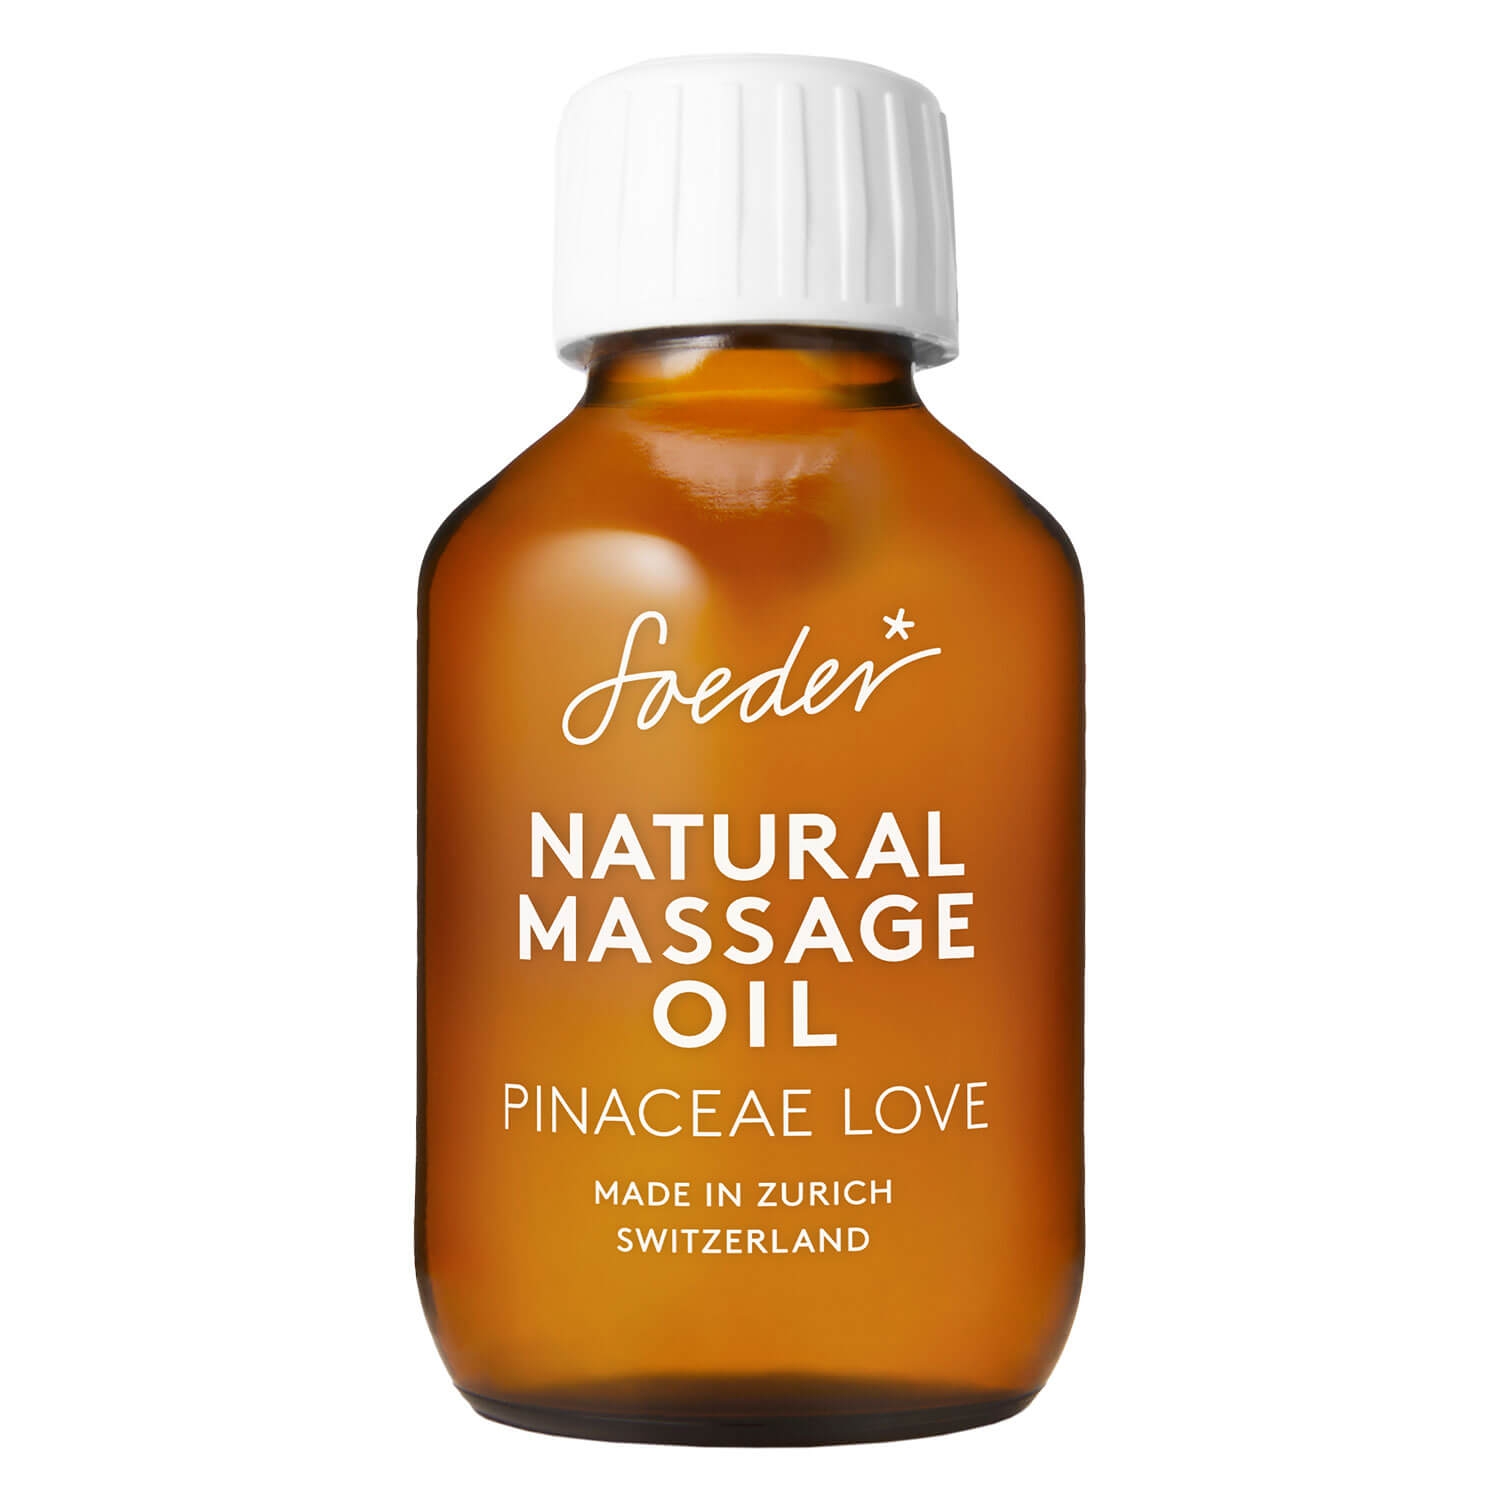 Produktbild von Soeder - Natural Massage Oil Pinaceae Love